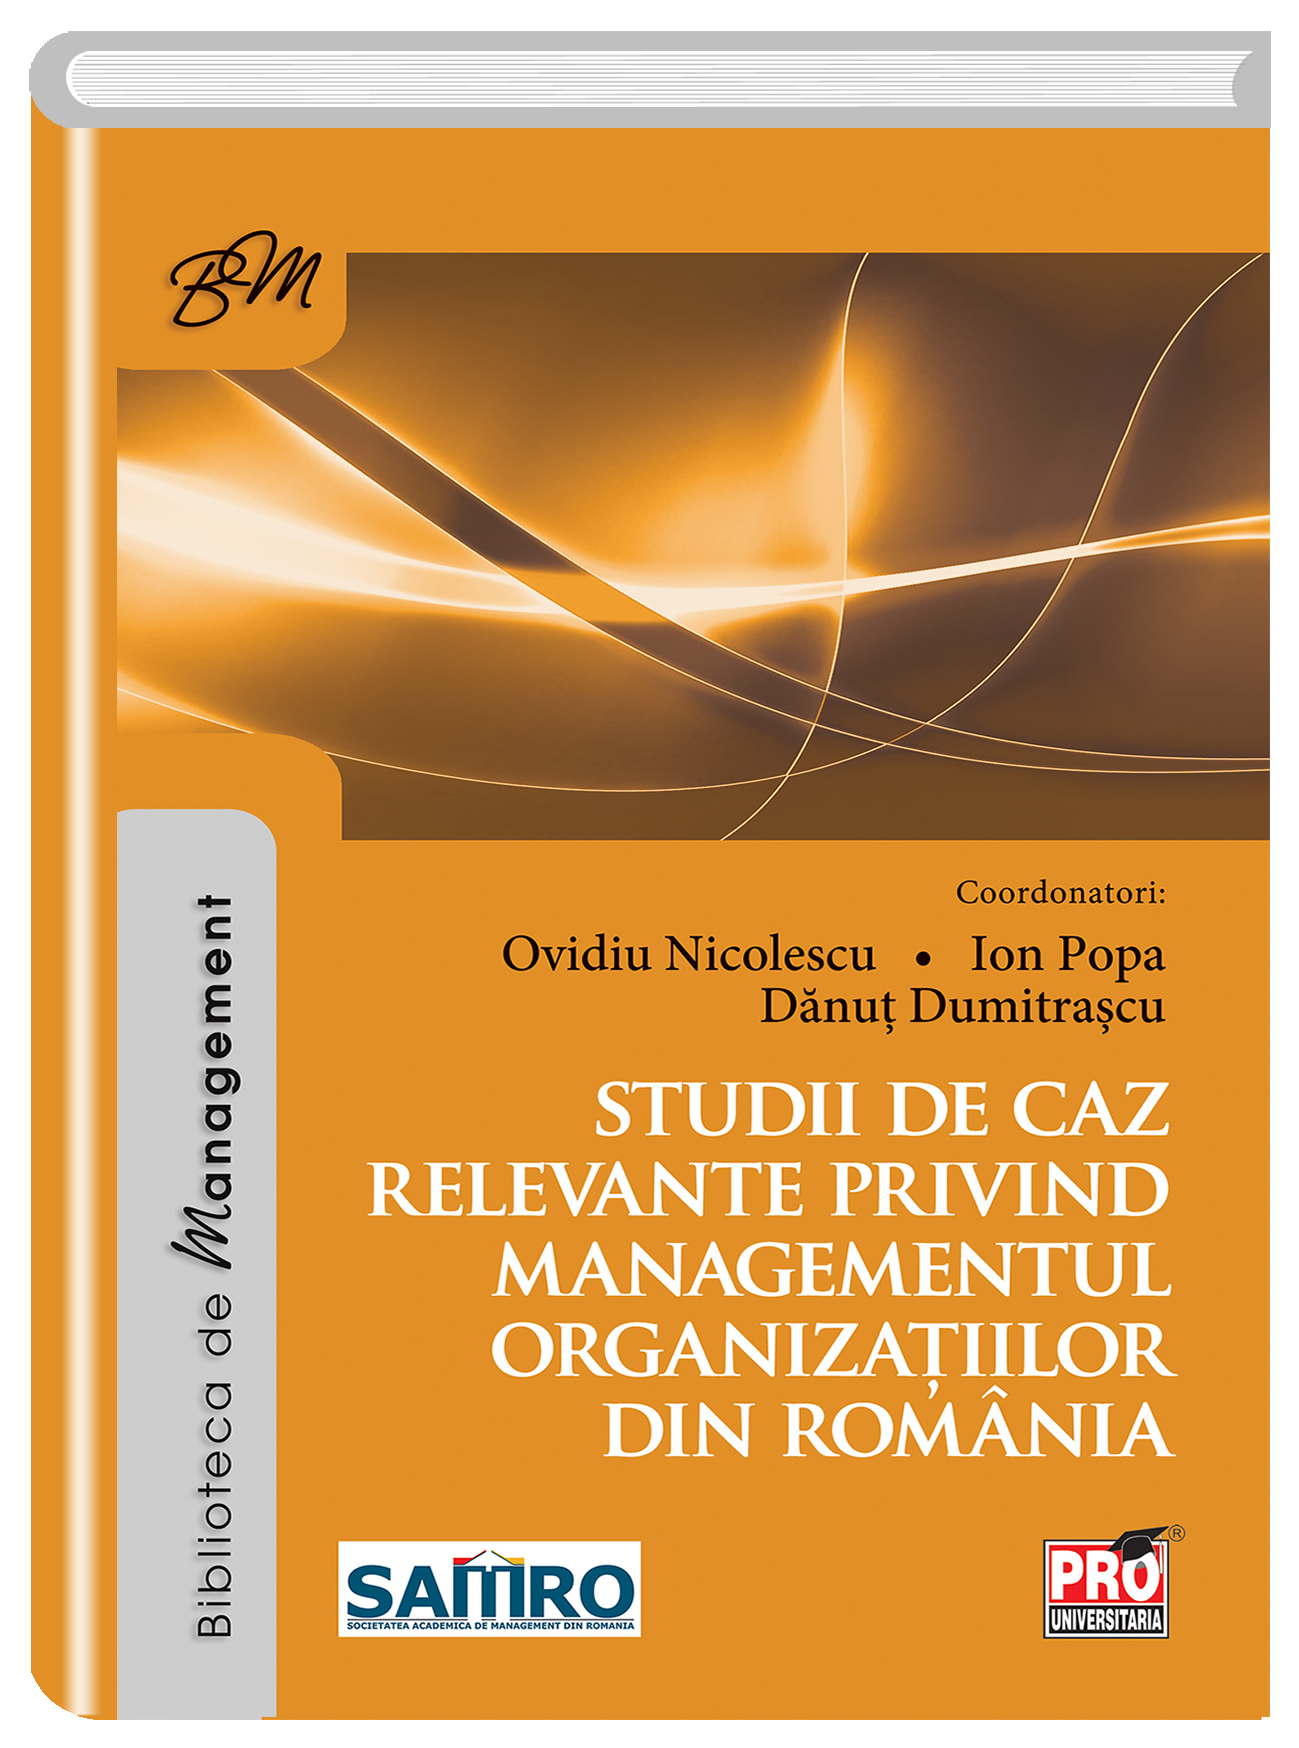 Studii de caz relevante privind managementul organizatiilor din Romania | Ovidiu Nicolescu, Ion Popa, Danut Dumitrascu